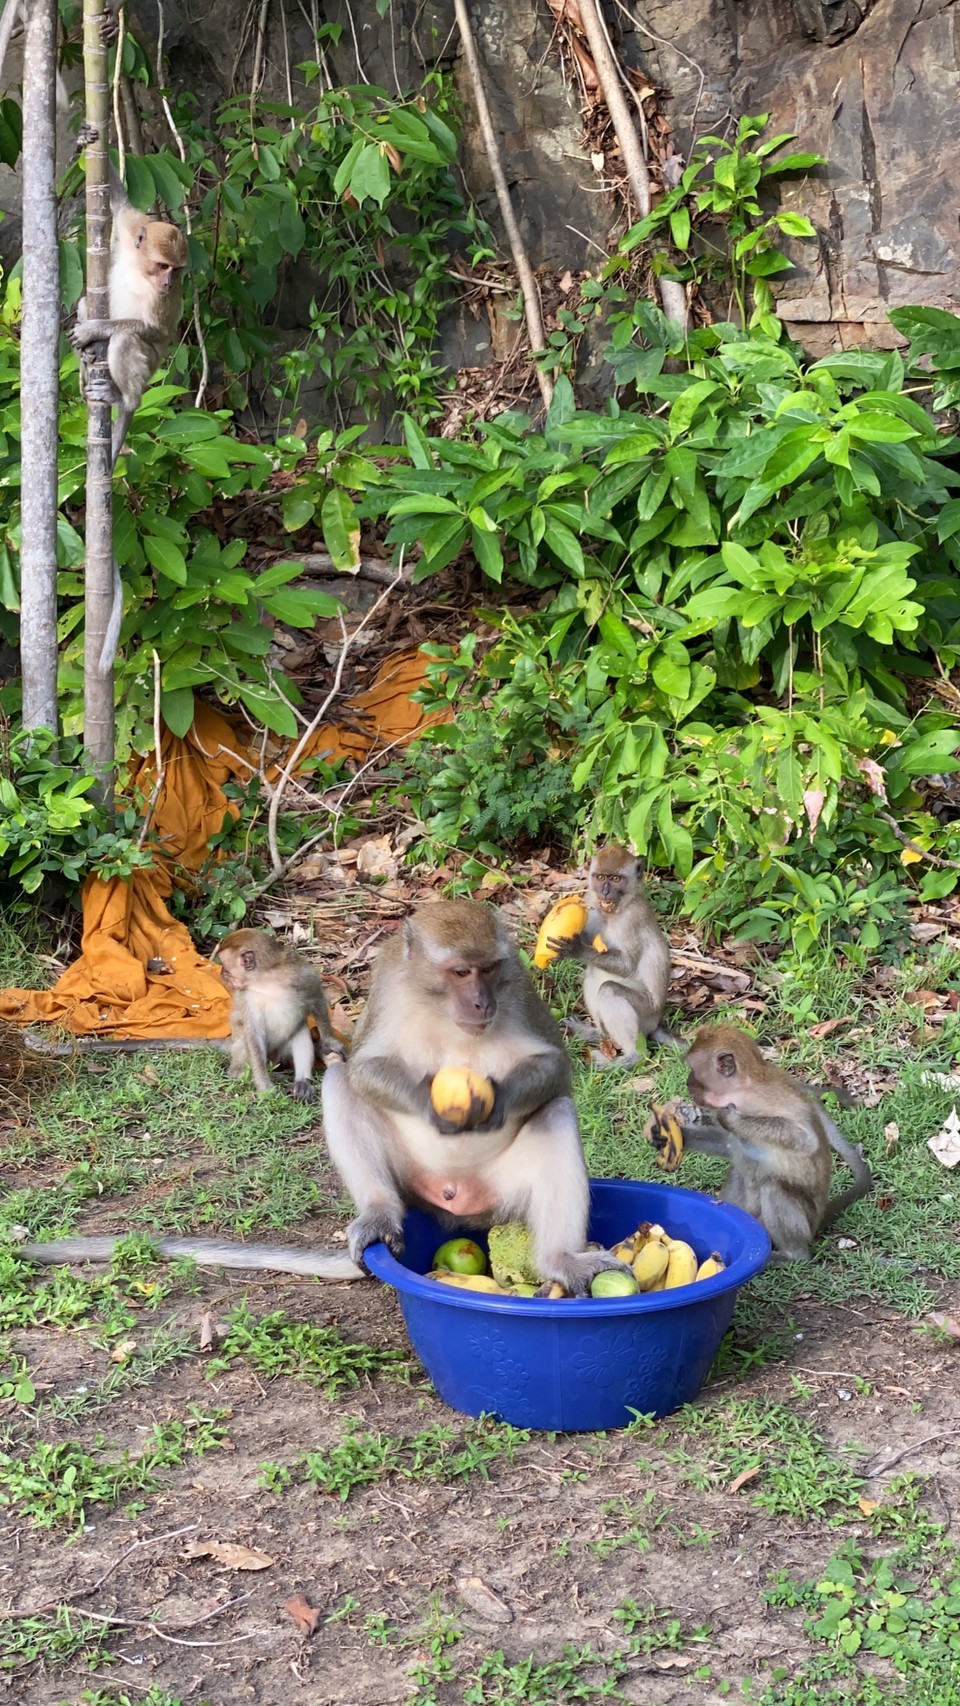 คนรักลิงสงขลารวมตัวกันช่วยเหลือลิงจัดอาหาร ผลไม้ที่เขาตังกวน